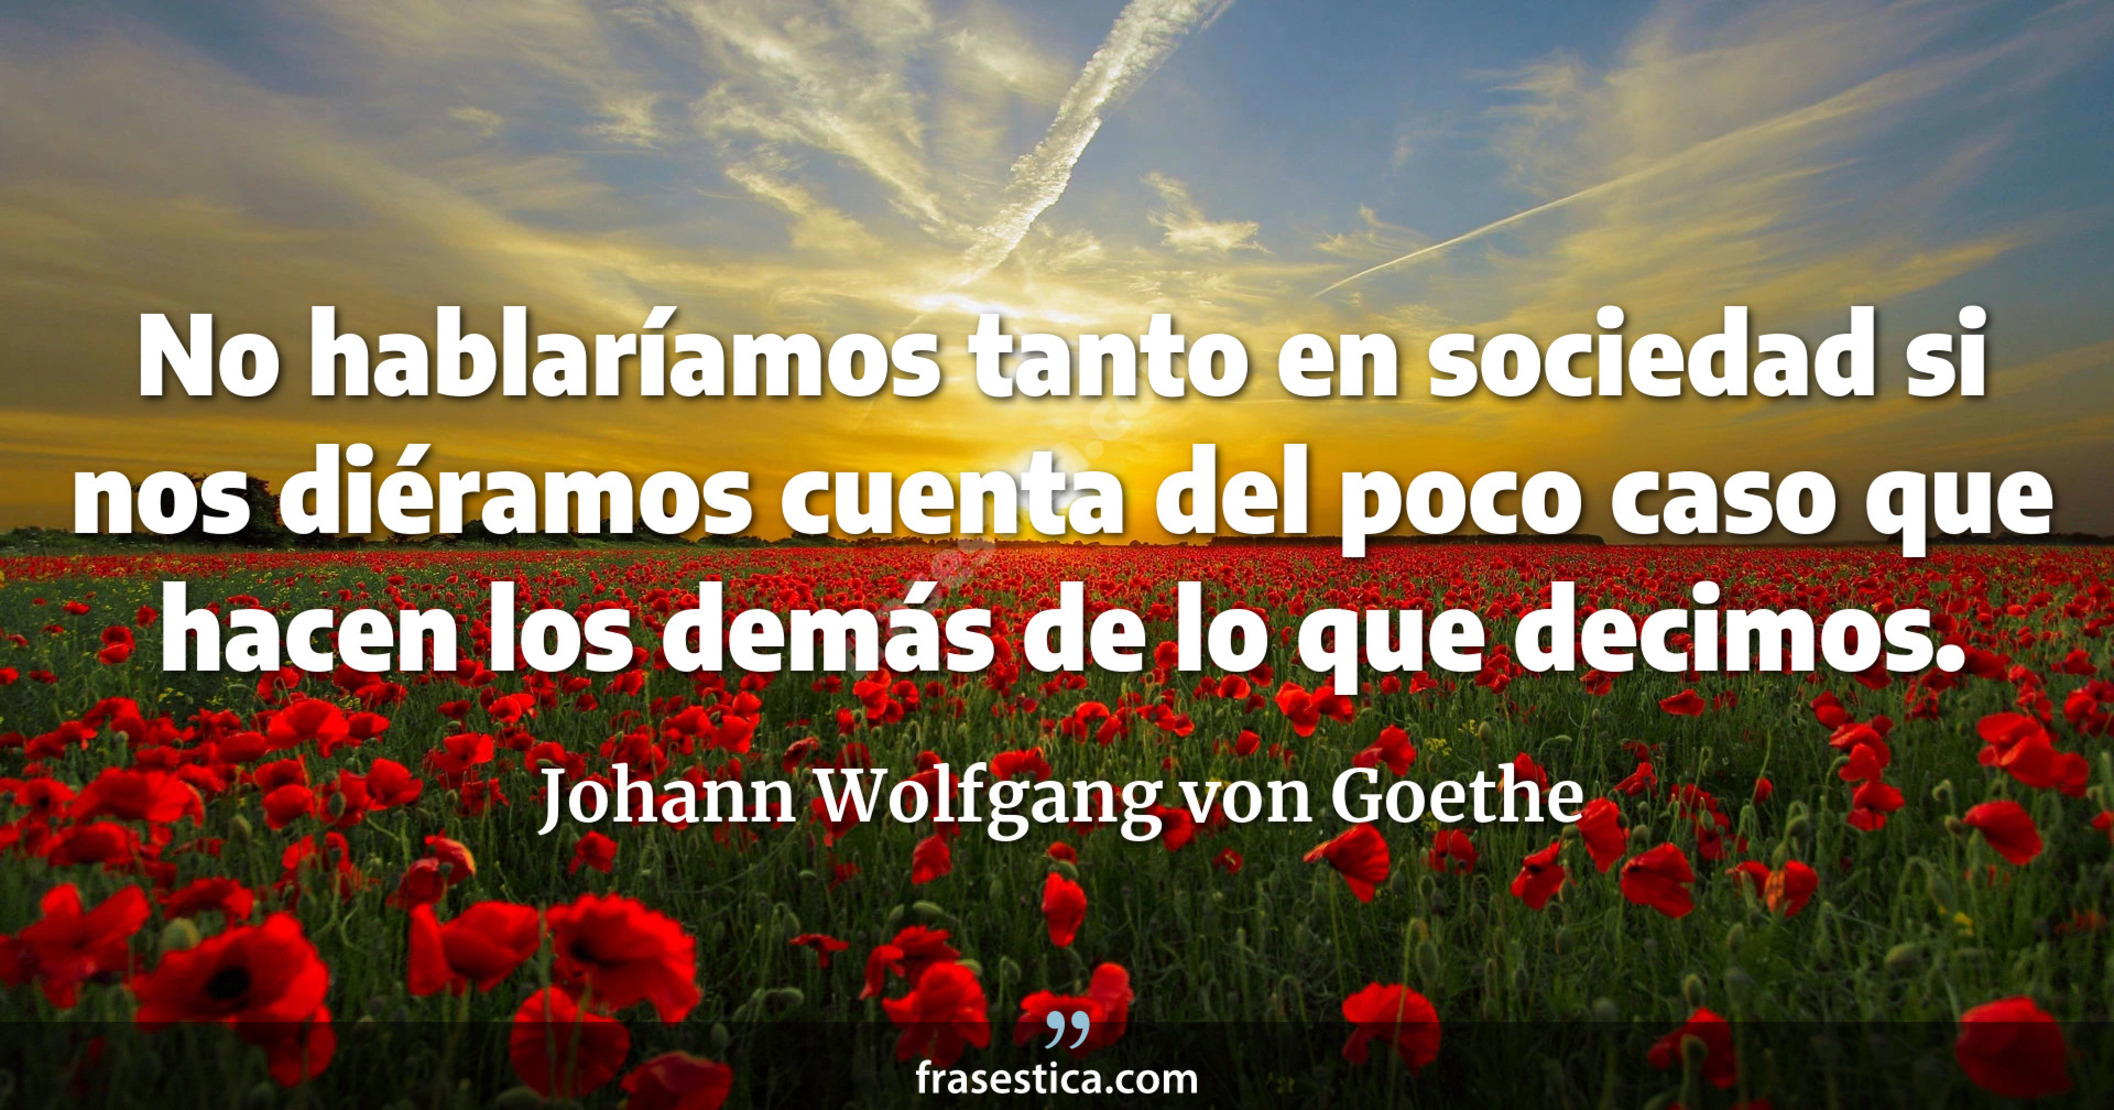 No hablaríamos tanto en sociedad si nos diéramos cuenta del poco caso que hacen los demás de lo que decimos. - Johann Wolfgang von Goethe